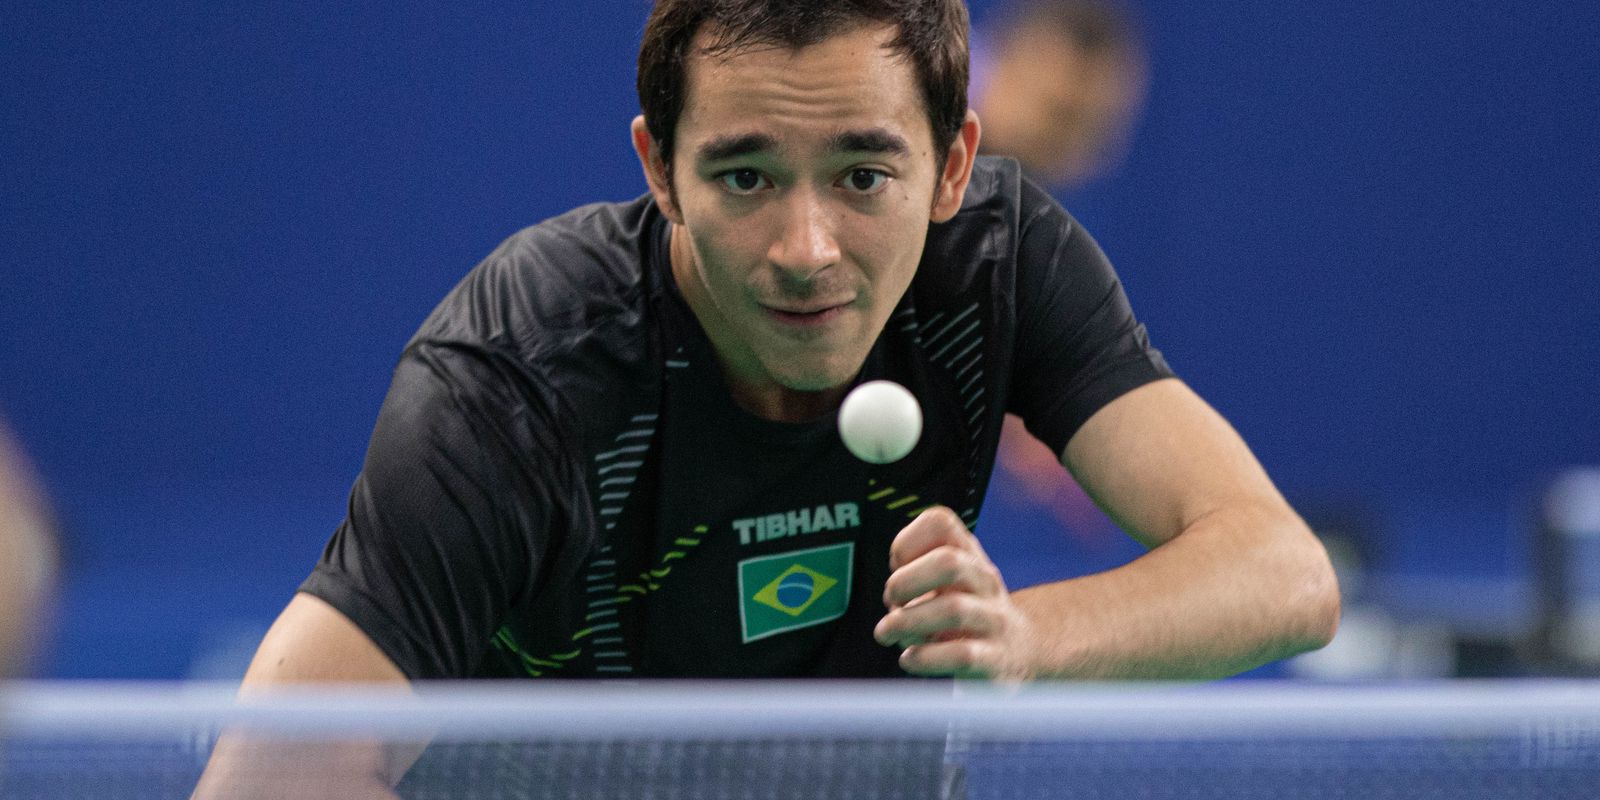 « Je suis à 80% », déclare Calderano, le 4e meilleur joueur de tennis de table au monde